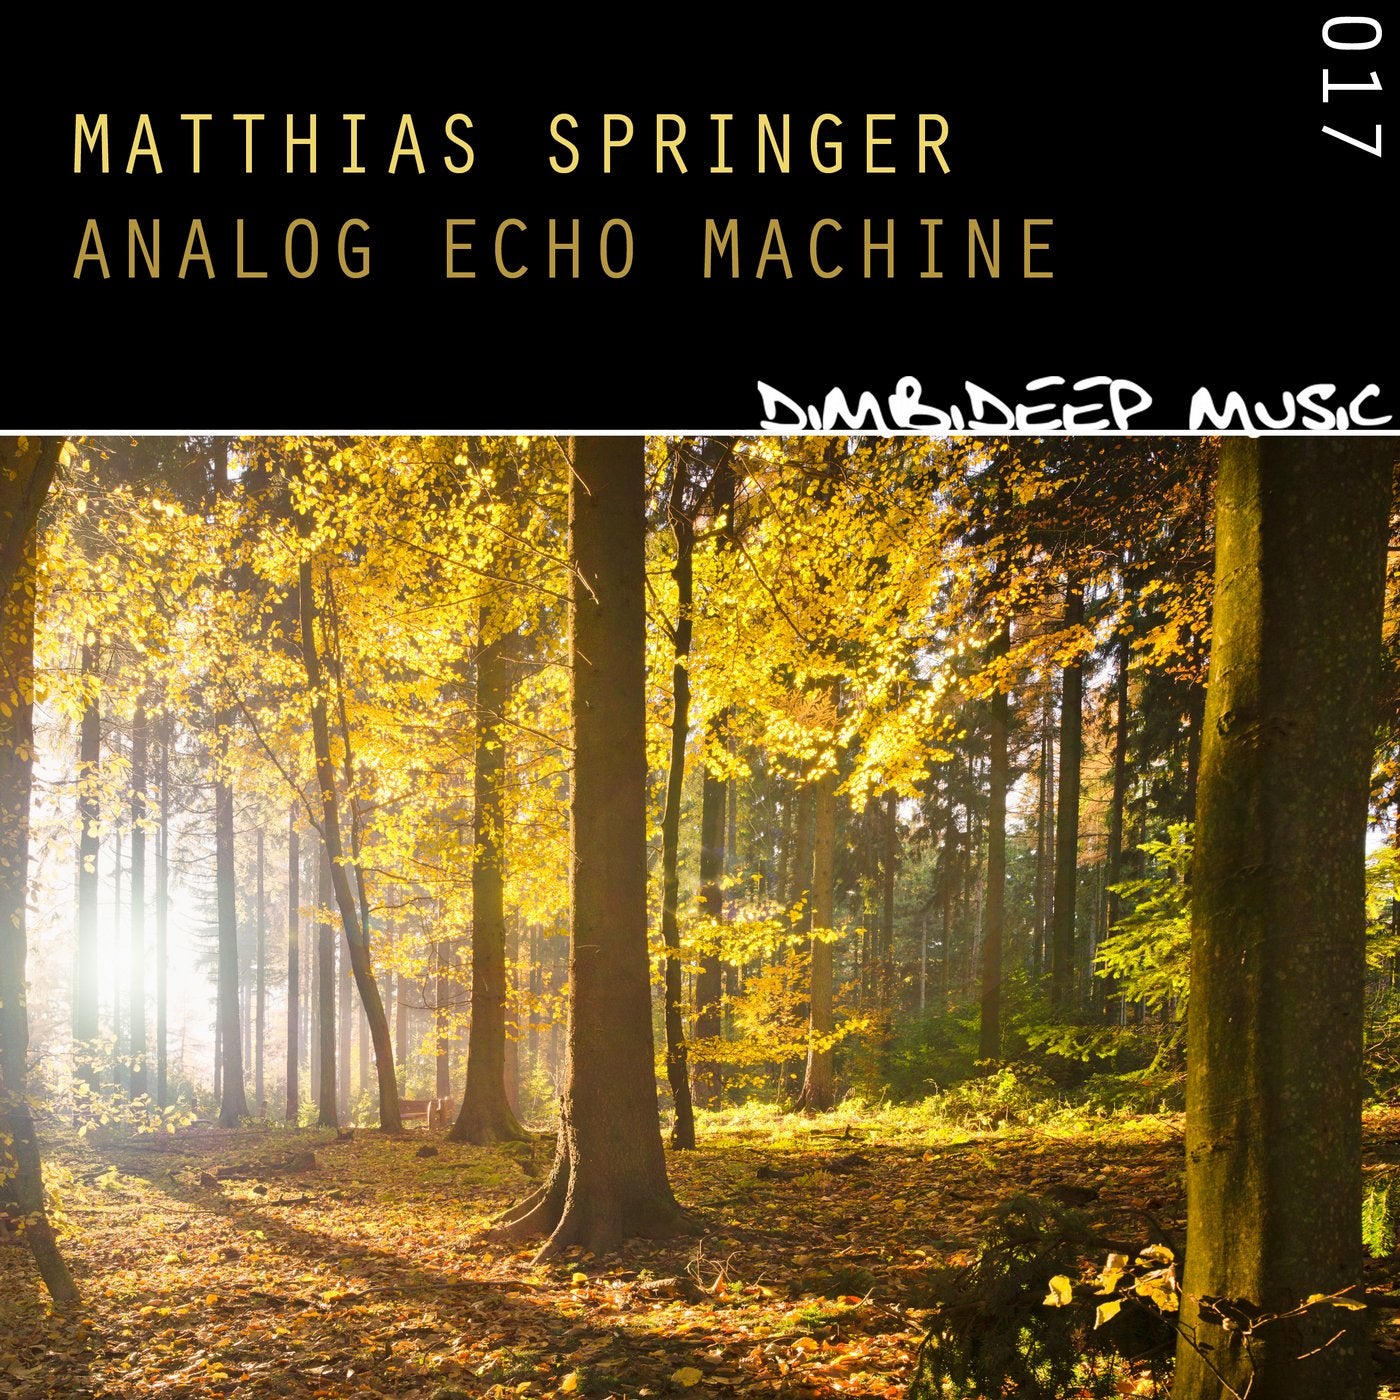 Analog Echo Machine